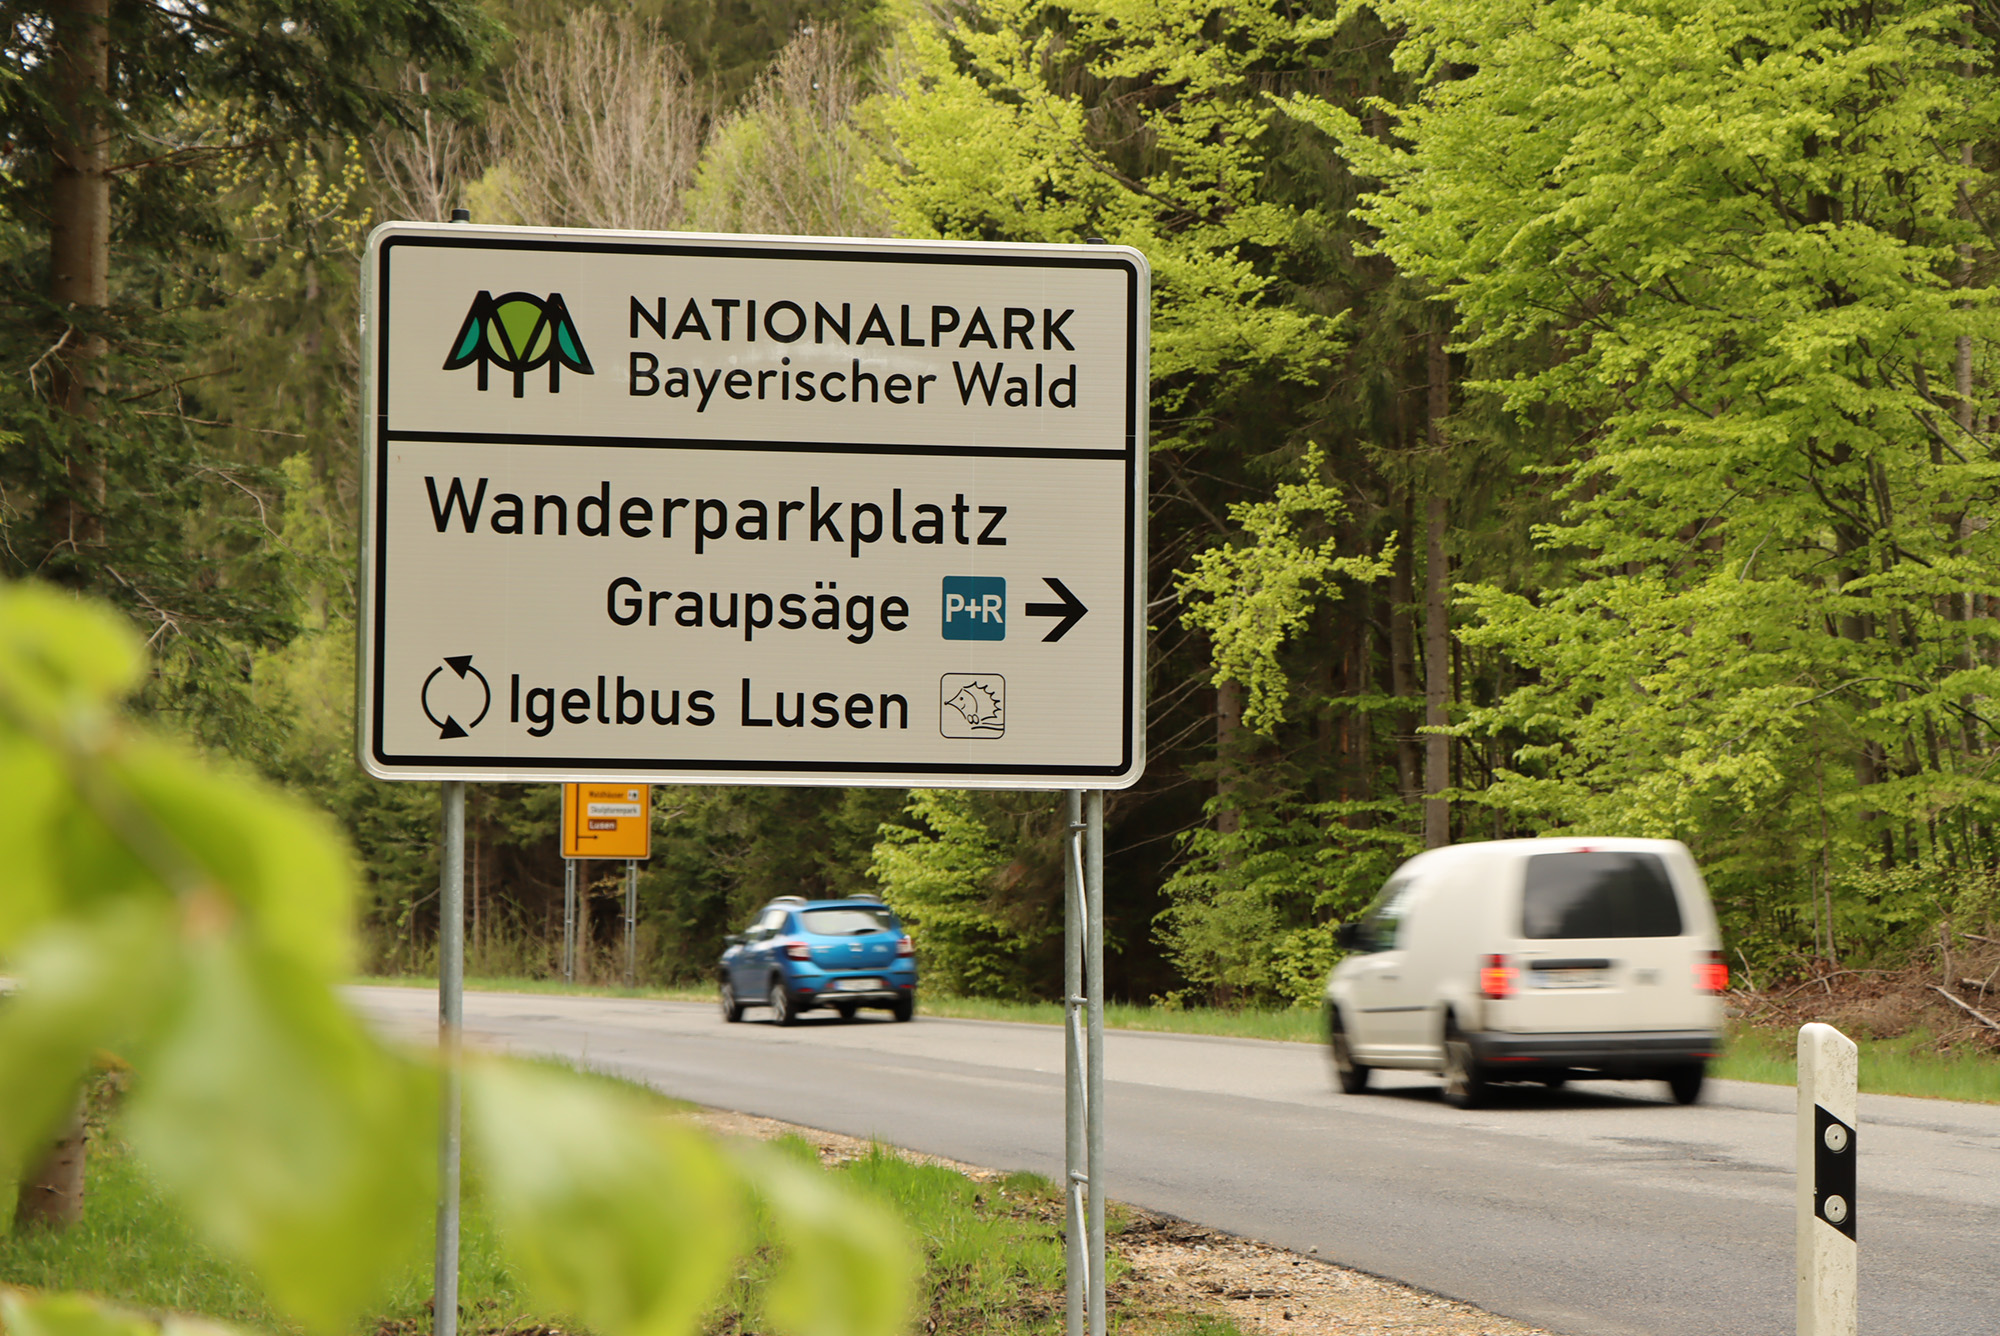 Eine der Stellflächen, die mit der Sensorik ausgestattet werden, ist der P+R-Parkplatz Graupsäge an der Nationalparkstraße. (Foto: Nationalpark Bayerischer Wald)